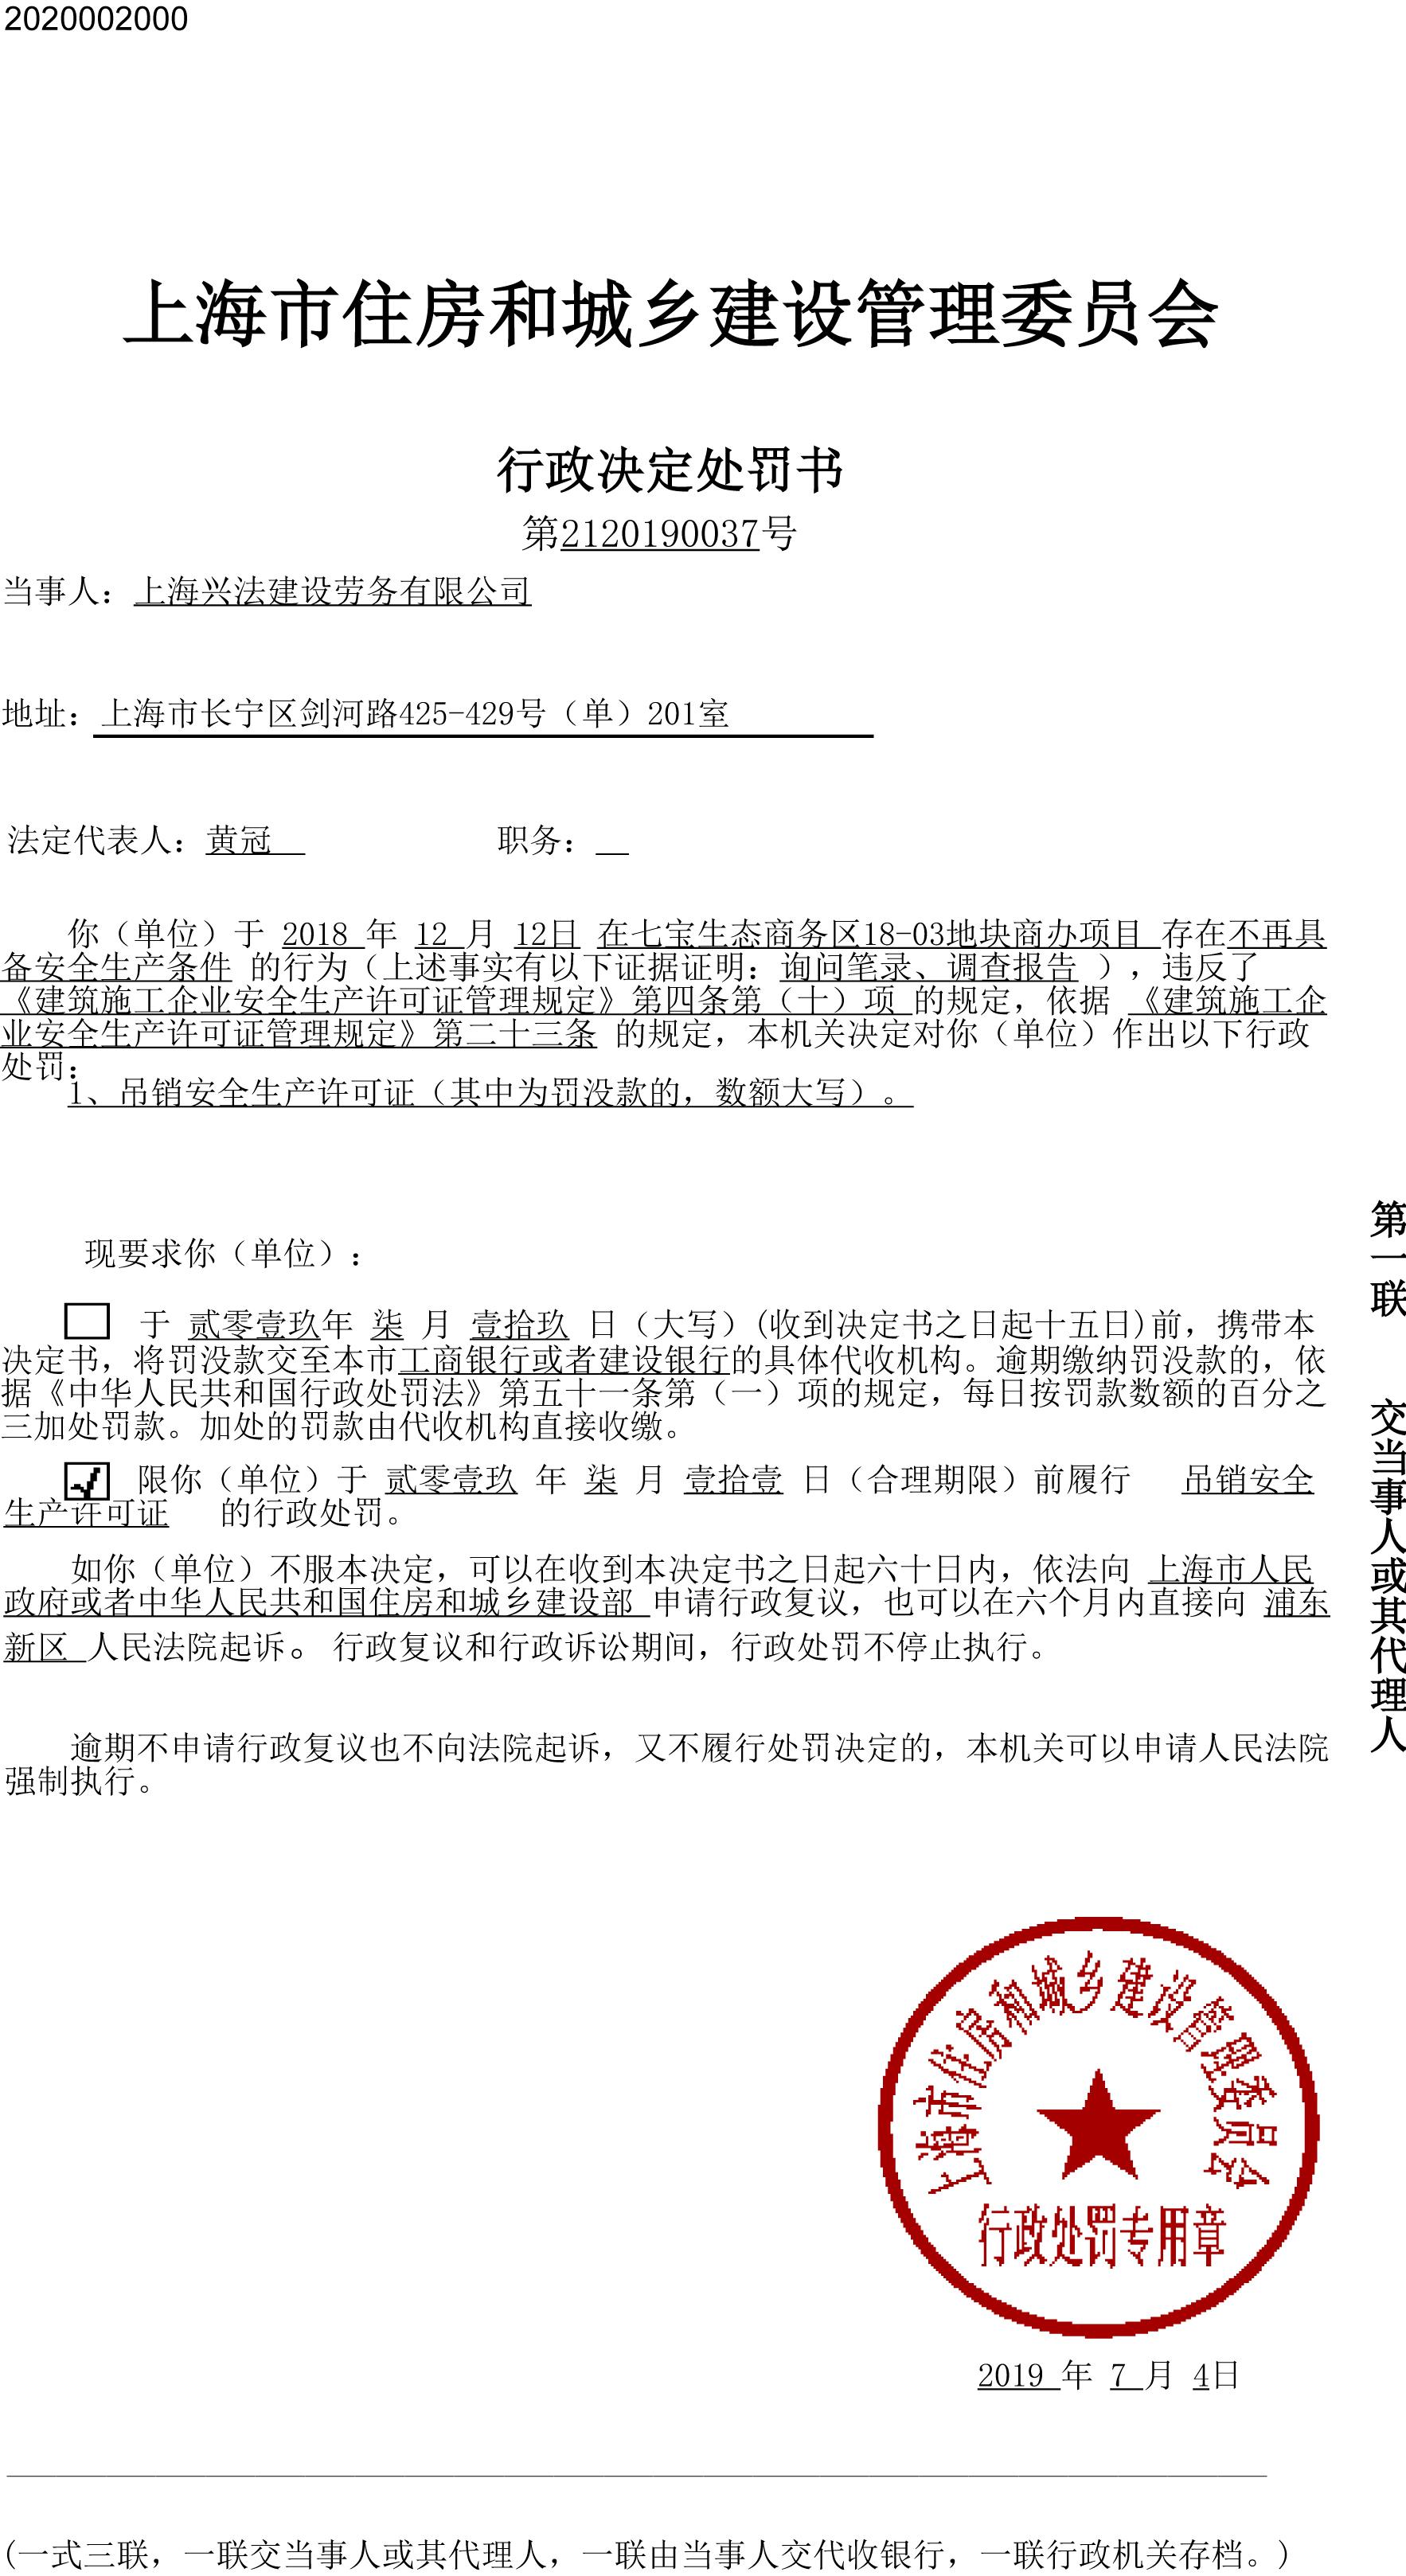 上海兴法建设劳务有限公司违法安全生产相关规定被吊销安全生产许可证